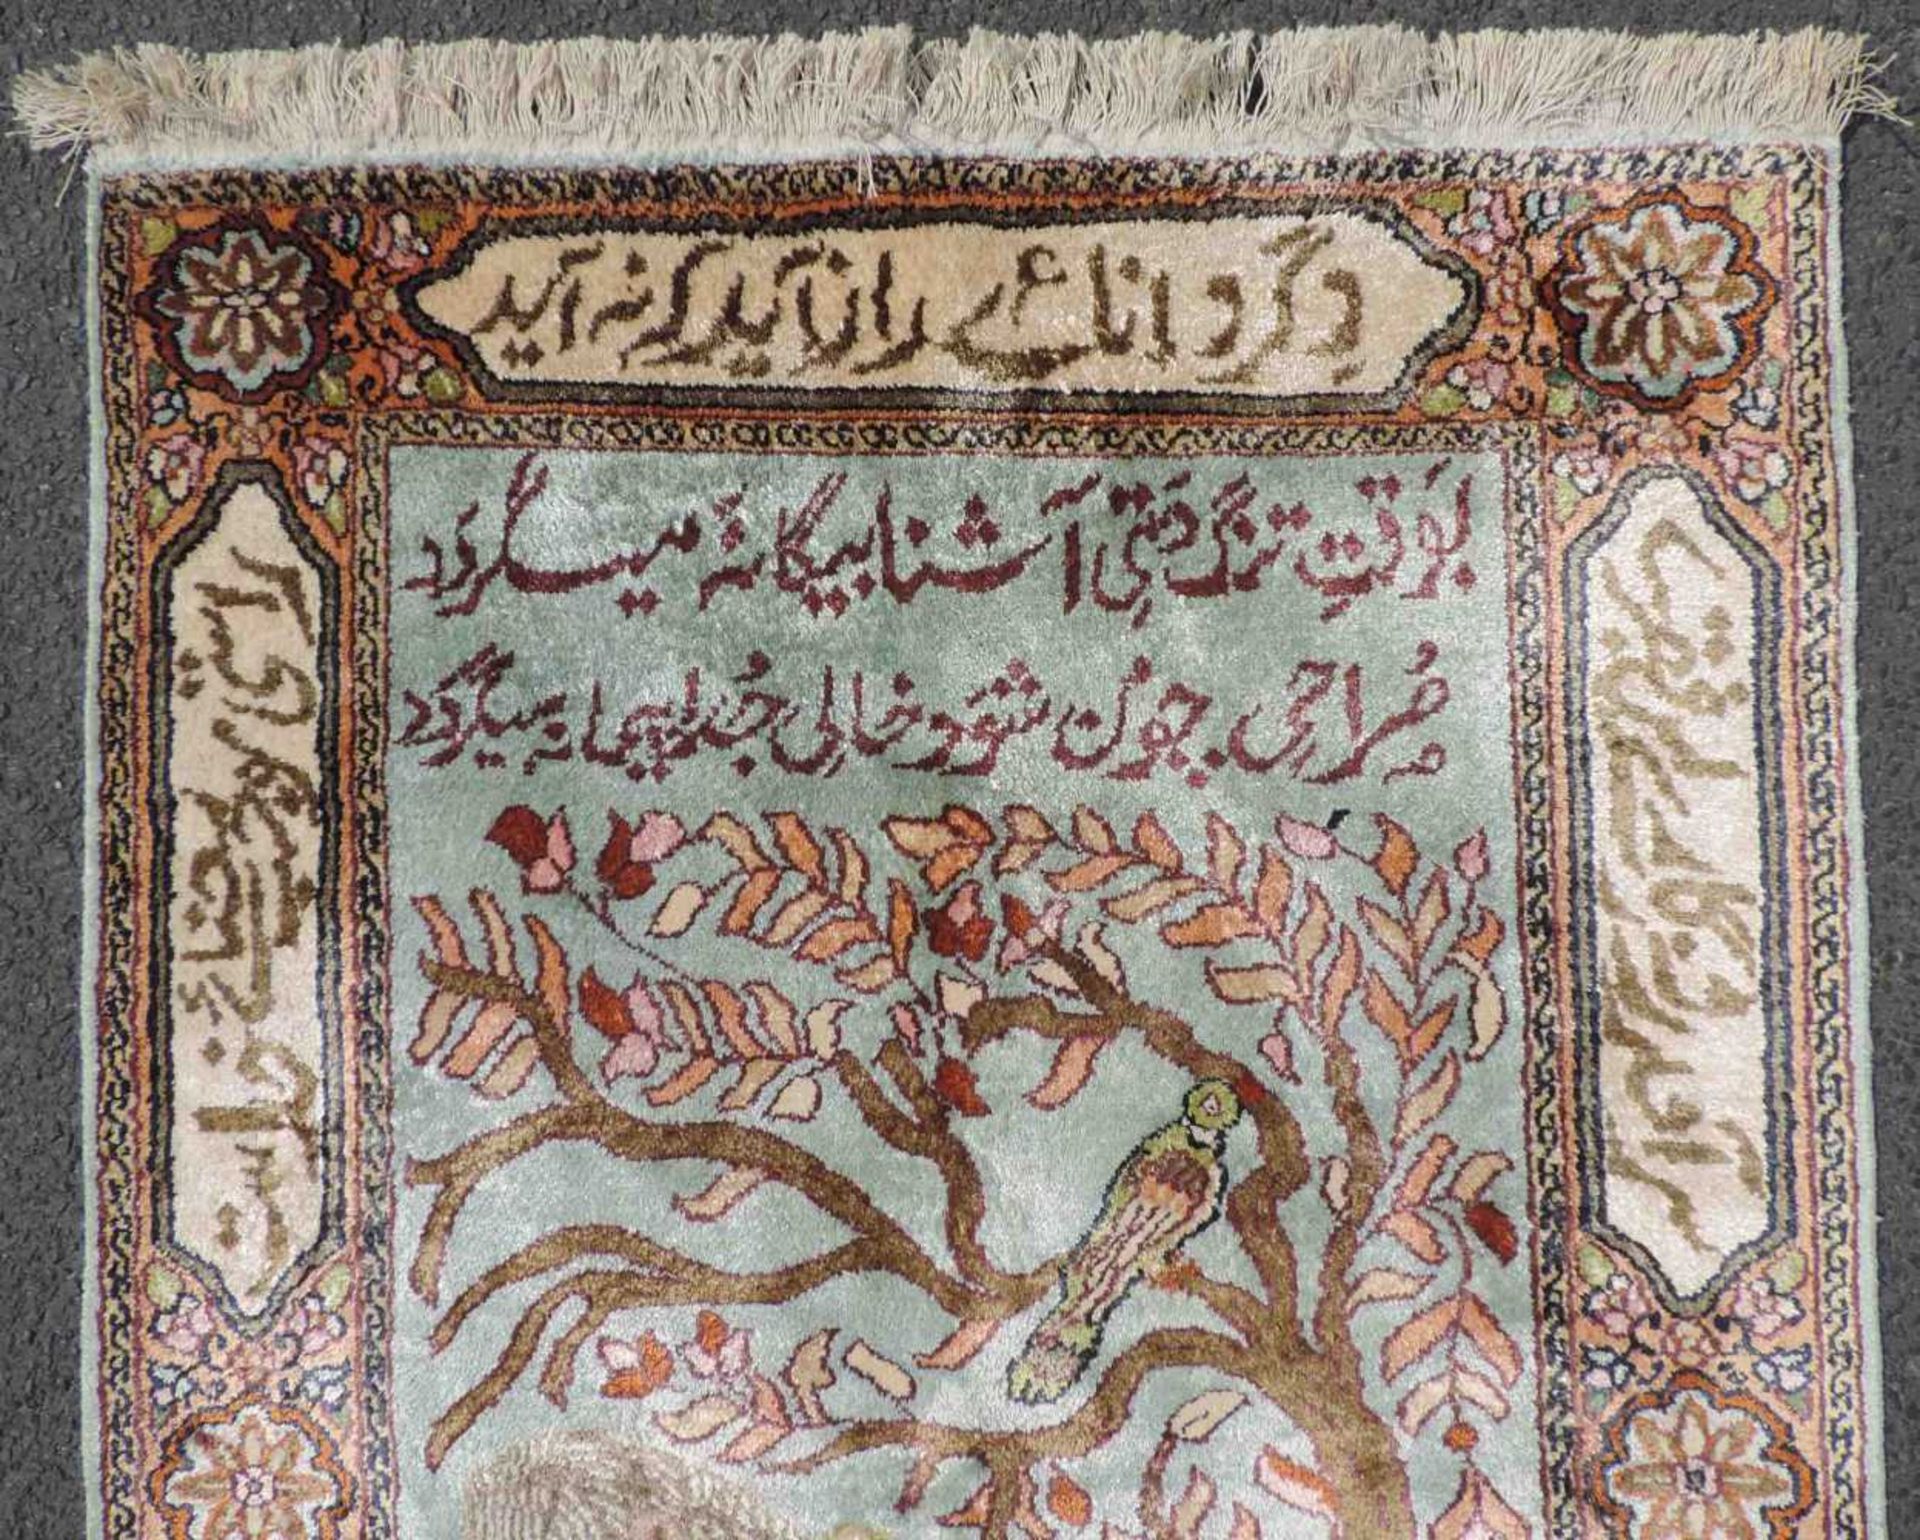 Feiner Bildteppich Seide. Kaschmir, Indien. 95 cm x 65 cm. Handgeknüpft. Flor reine Seide. Guter - Bild 4 aus 7